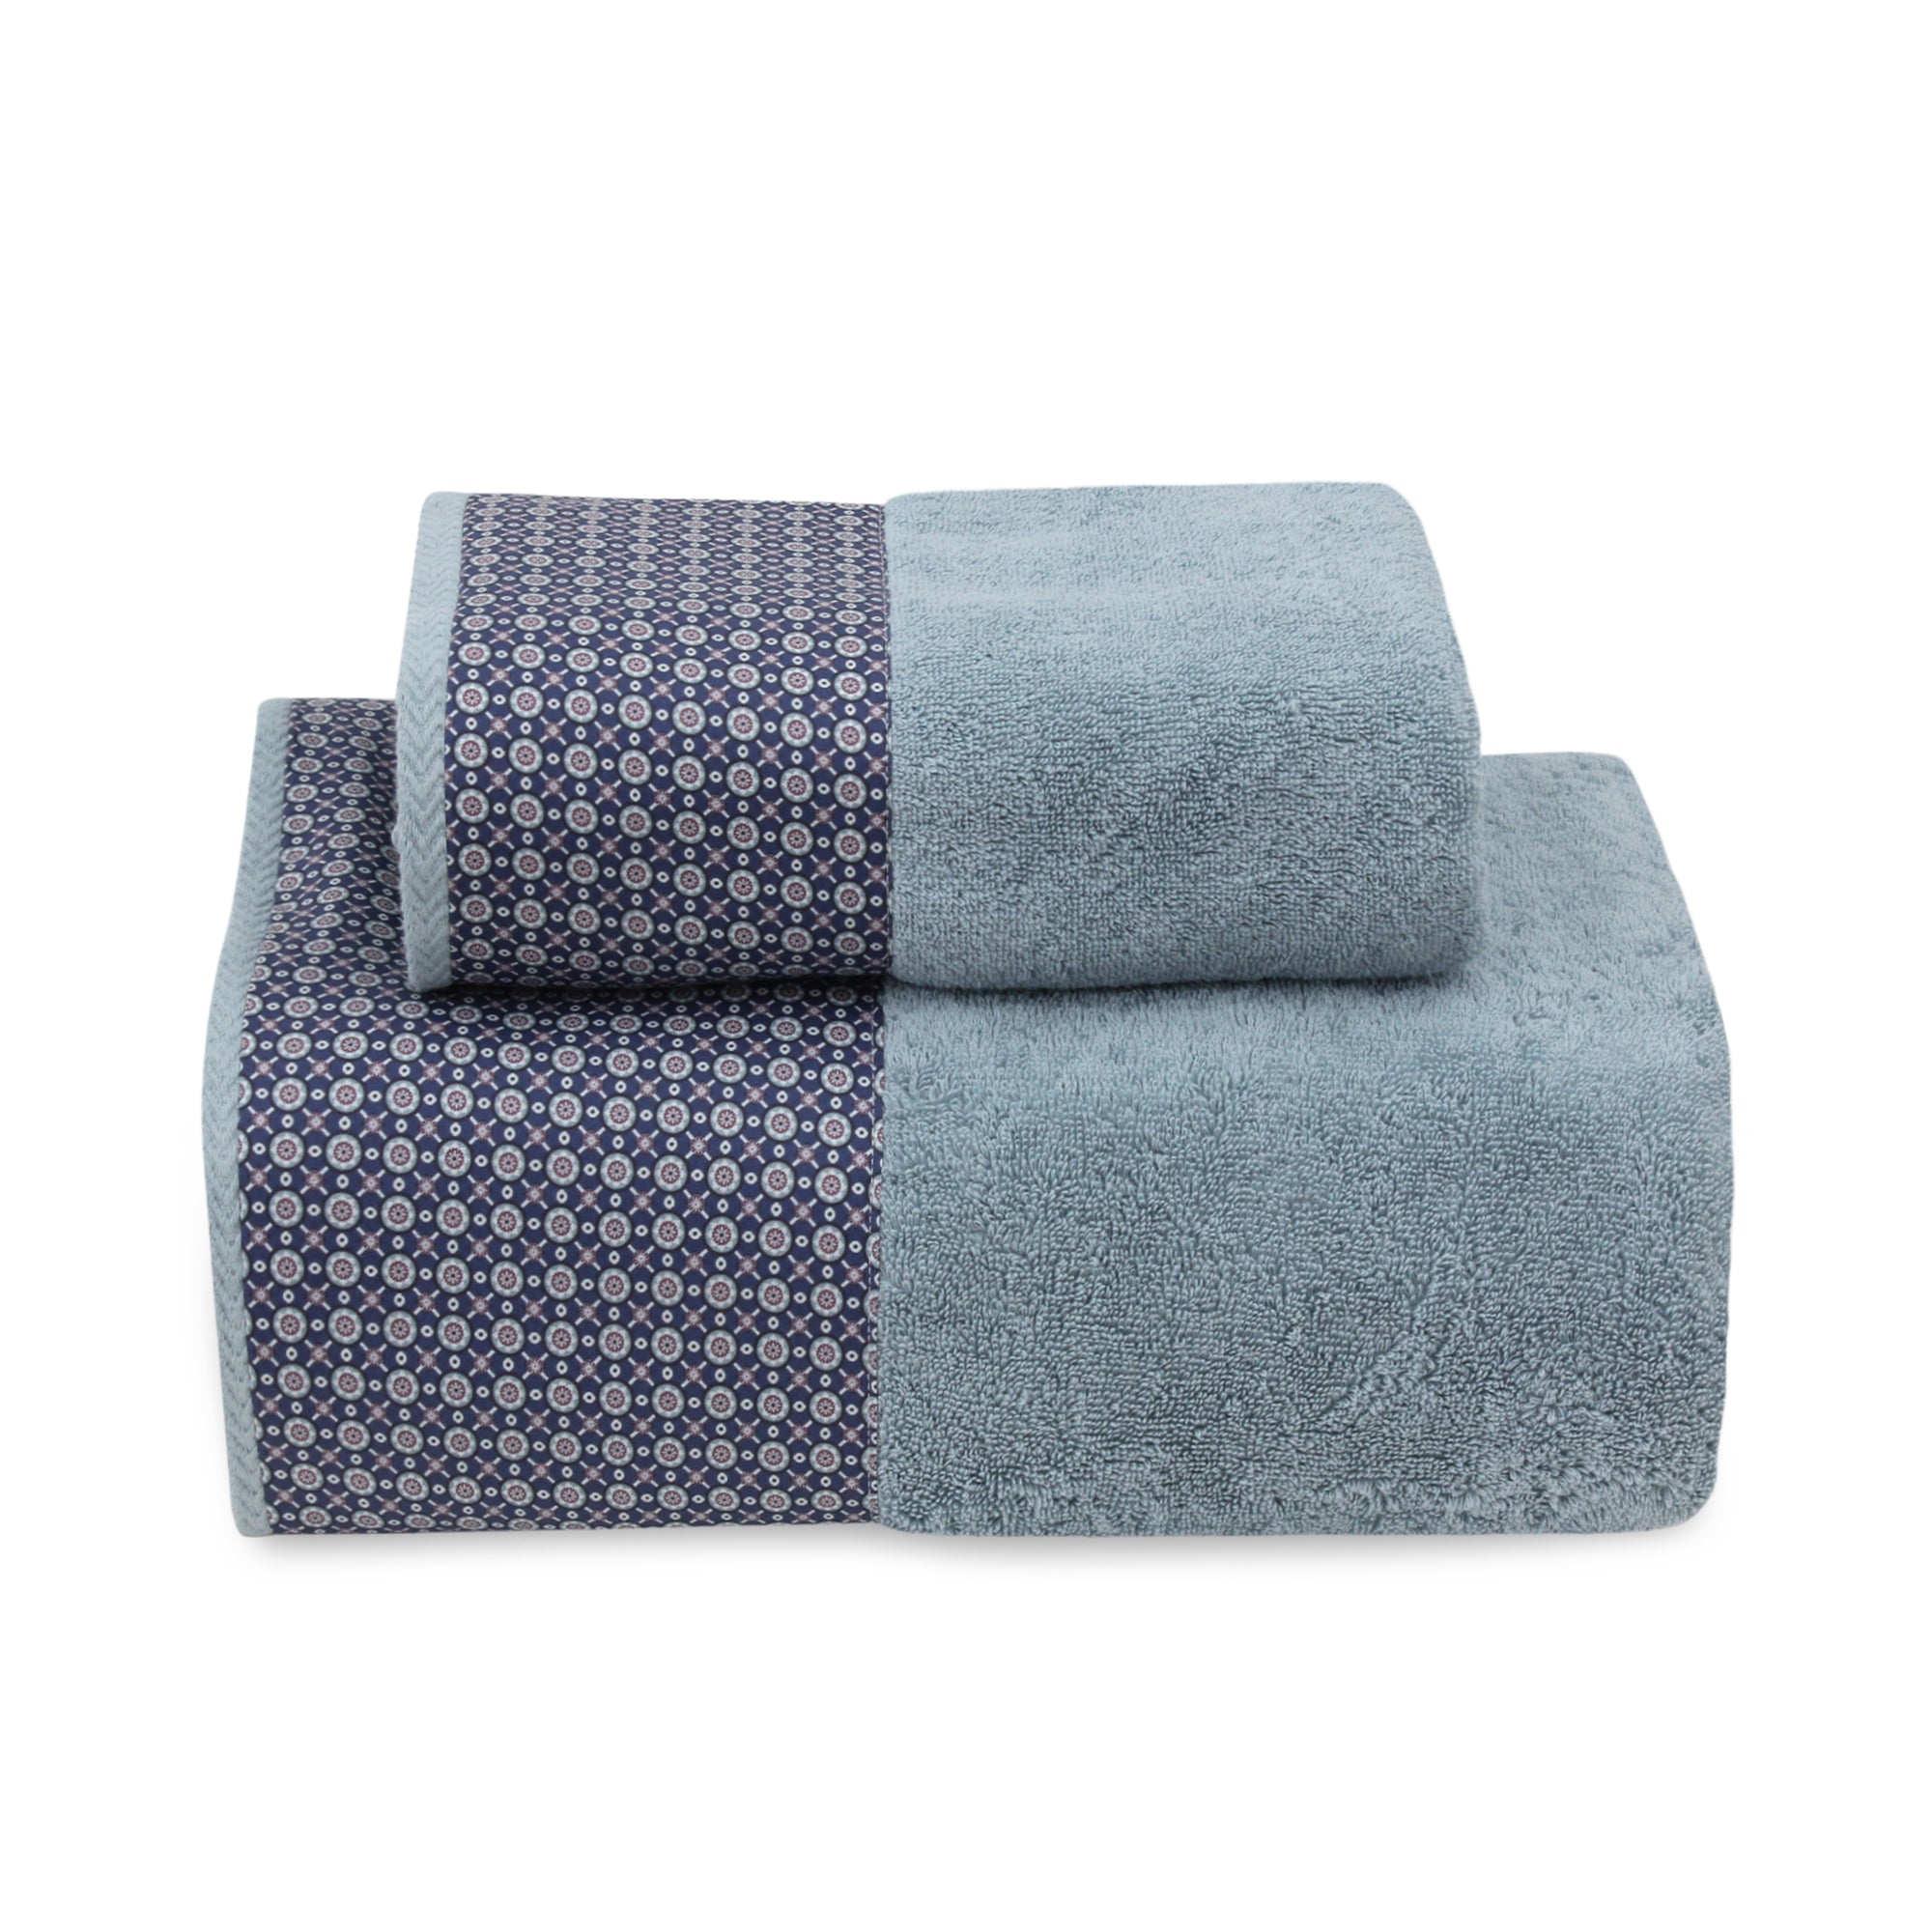 Arabesque Bath Towel Set (Blue)